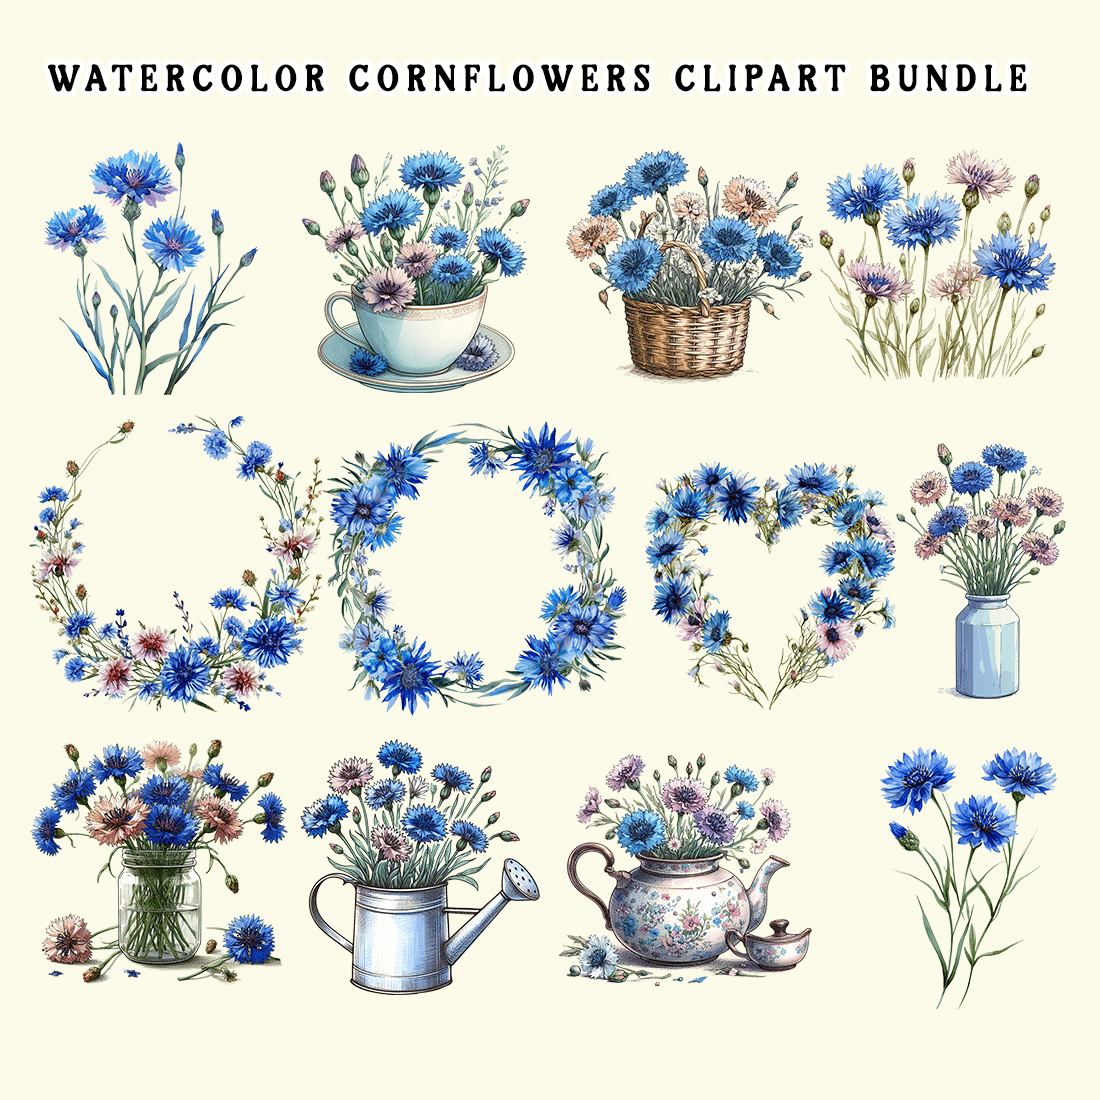 Watercolor Cornflowers Clipart Bundle preview image.